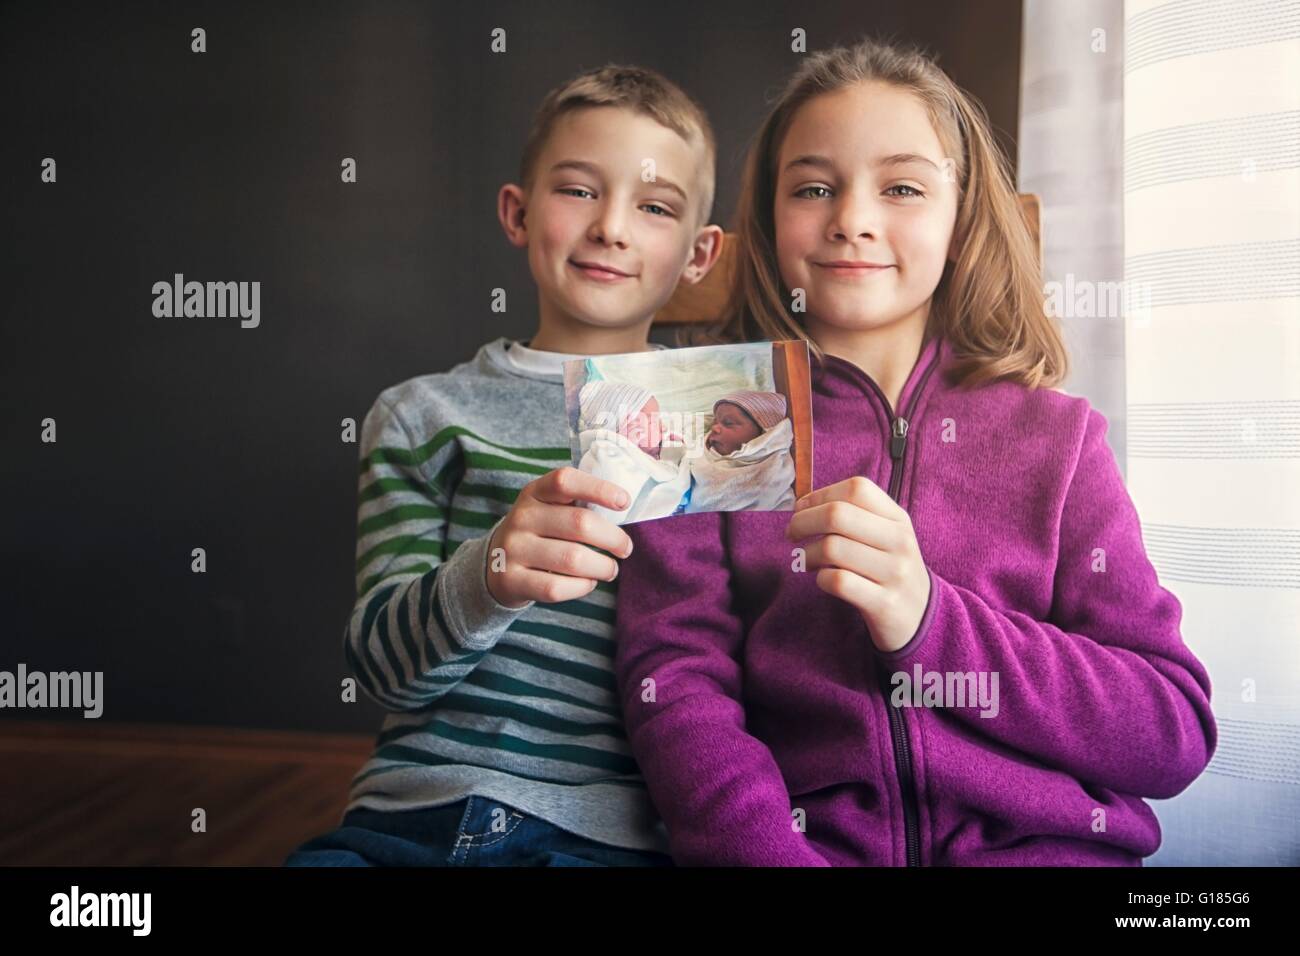 Ritratto di un ragazzo e una ragazza gemelli mantenendo la fotografia di se stessi come i neonati Foto Stock